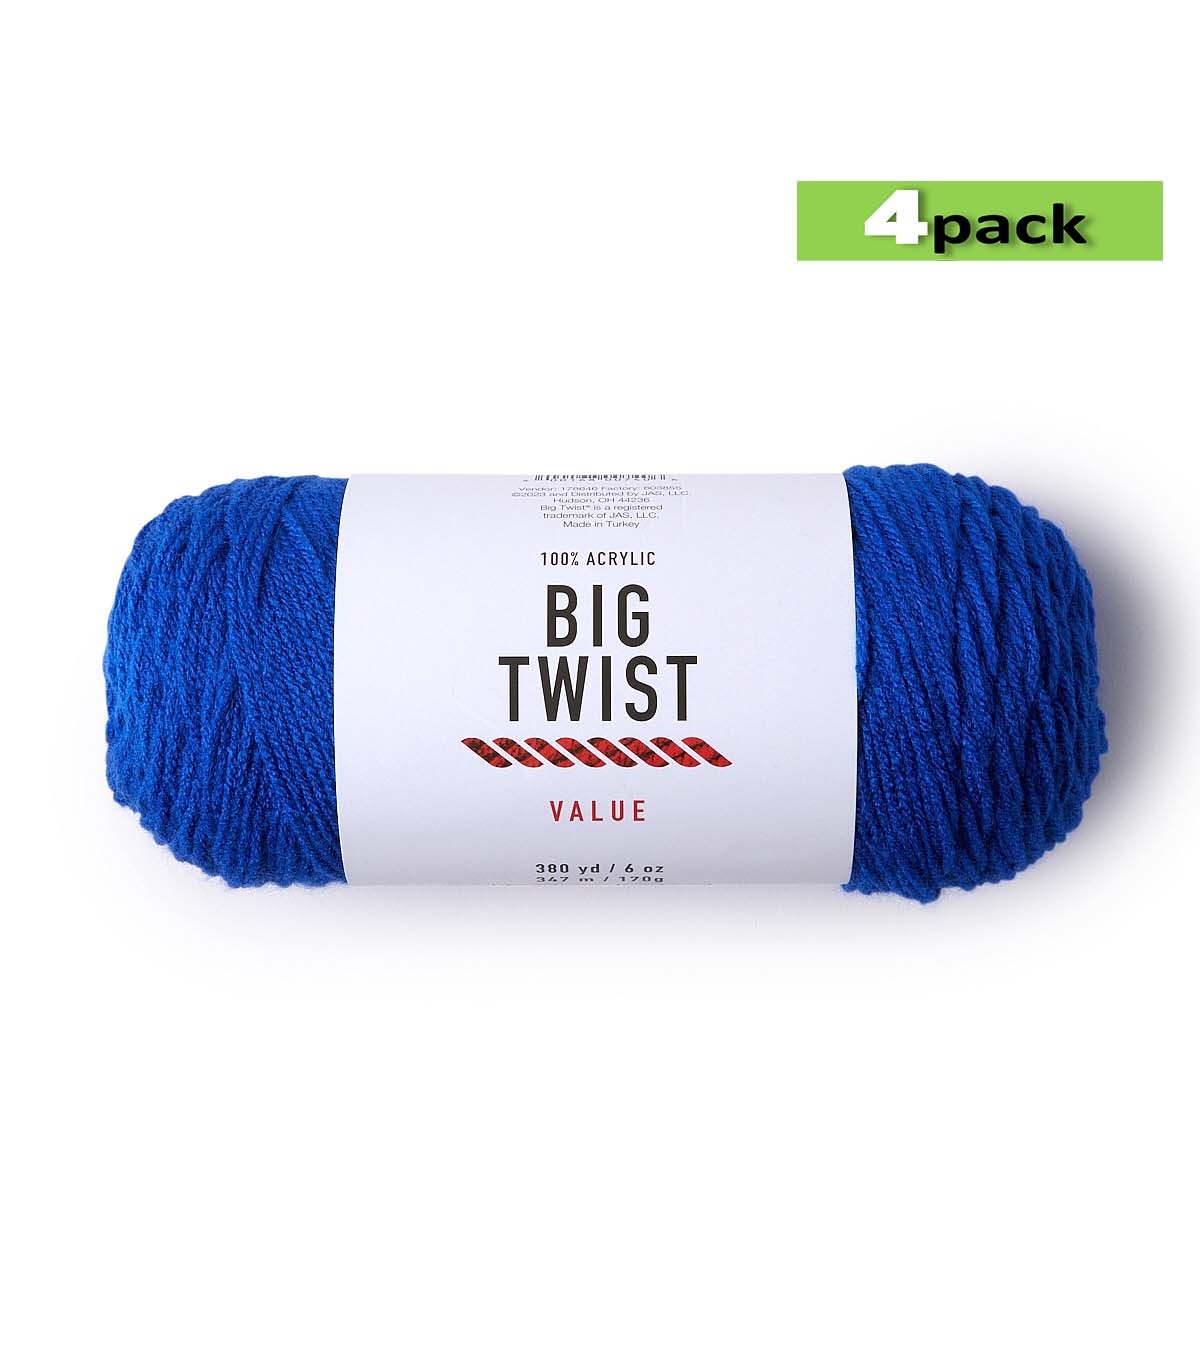 4pk Solid Blue Medium Weight Acrylic 380yd Value Yarn by Big Twist